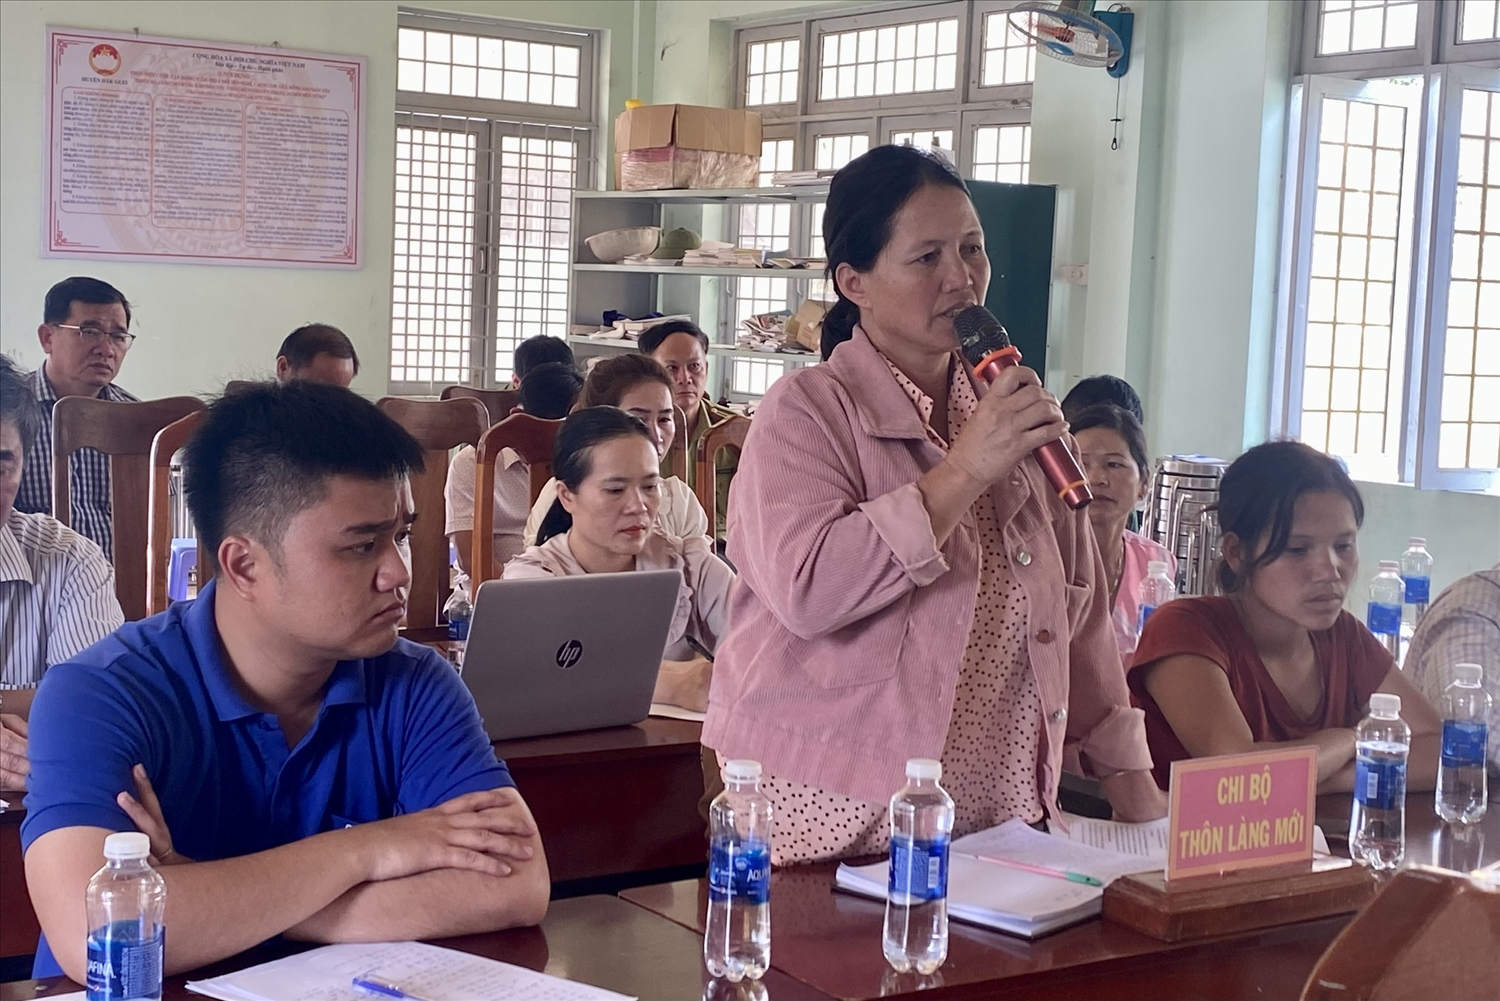 Bà Y Bia – Bí thư Chi bộ thôn Làng Mới kiến nghị với Đoàn công tác của Bí thư Tỉnh ủy Kon Tum